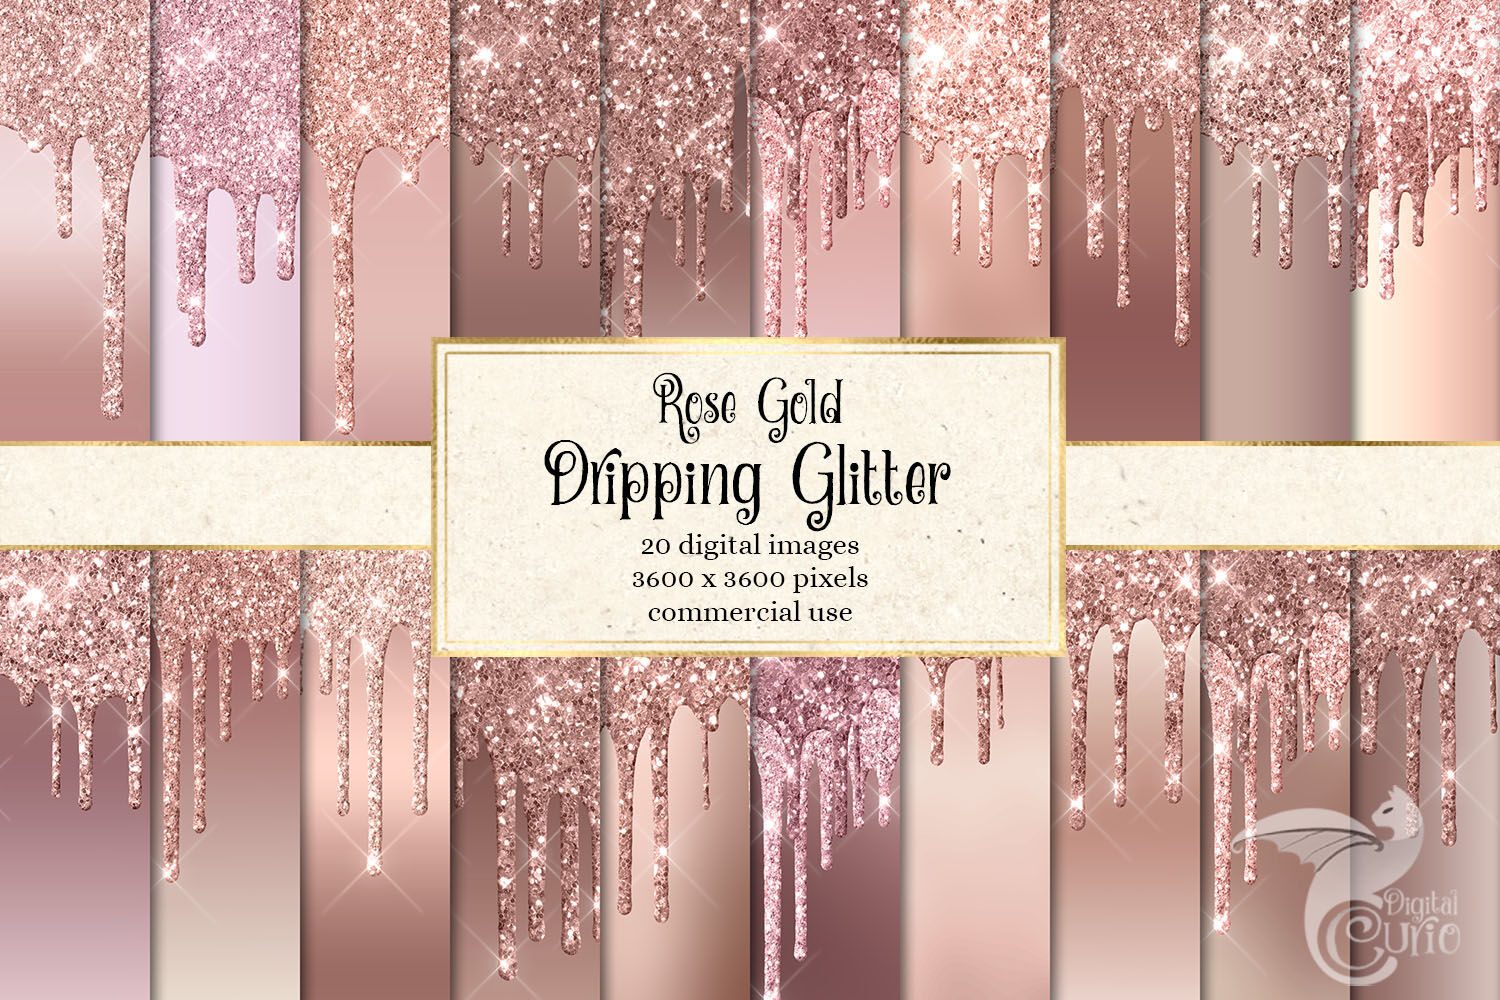 Glitter Delight / Glitter /Rose Gold – Glitter Delight LLC